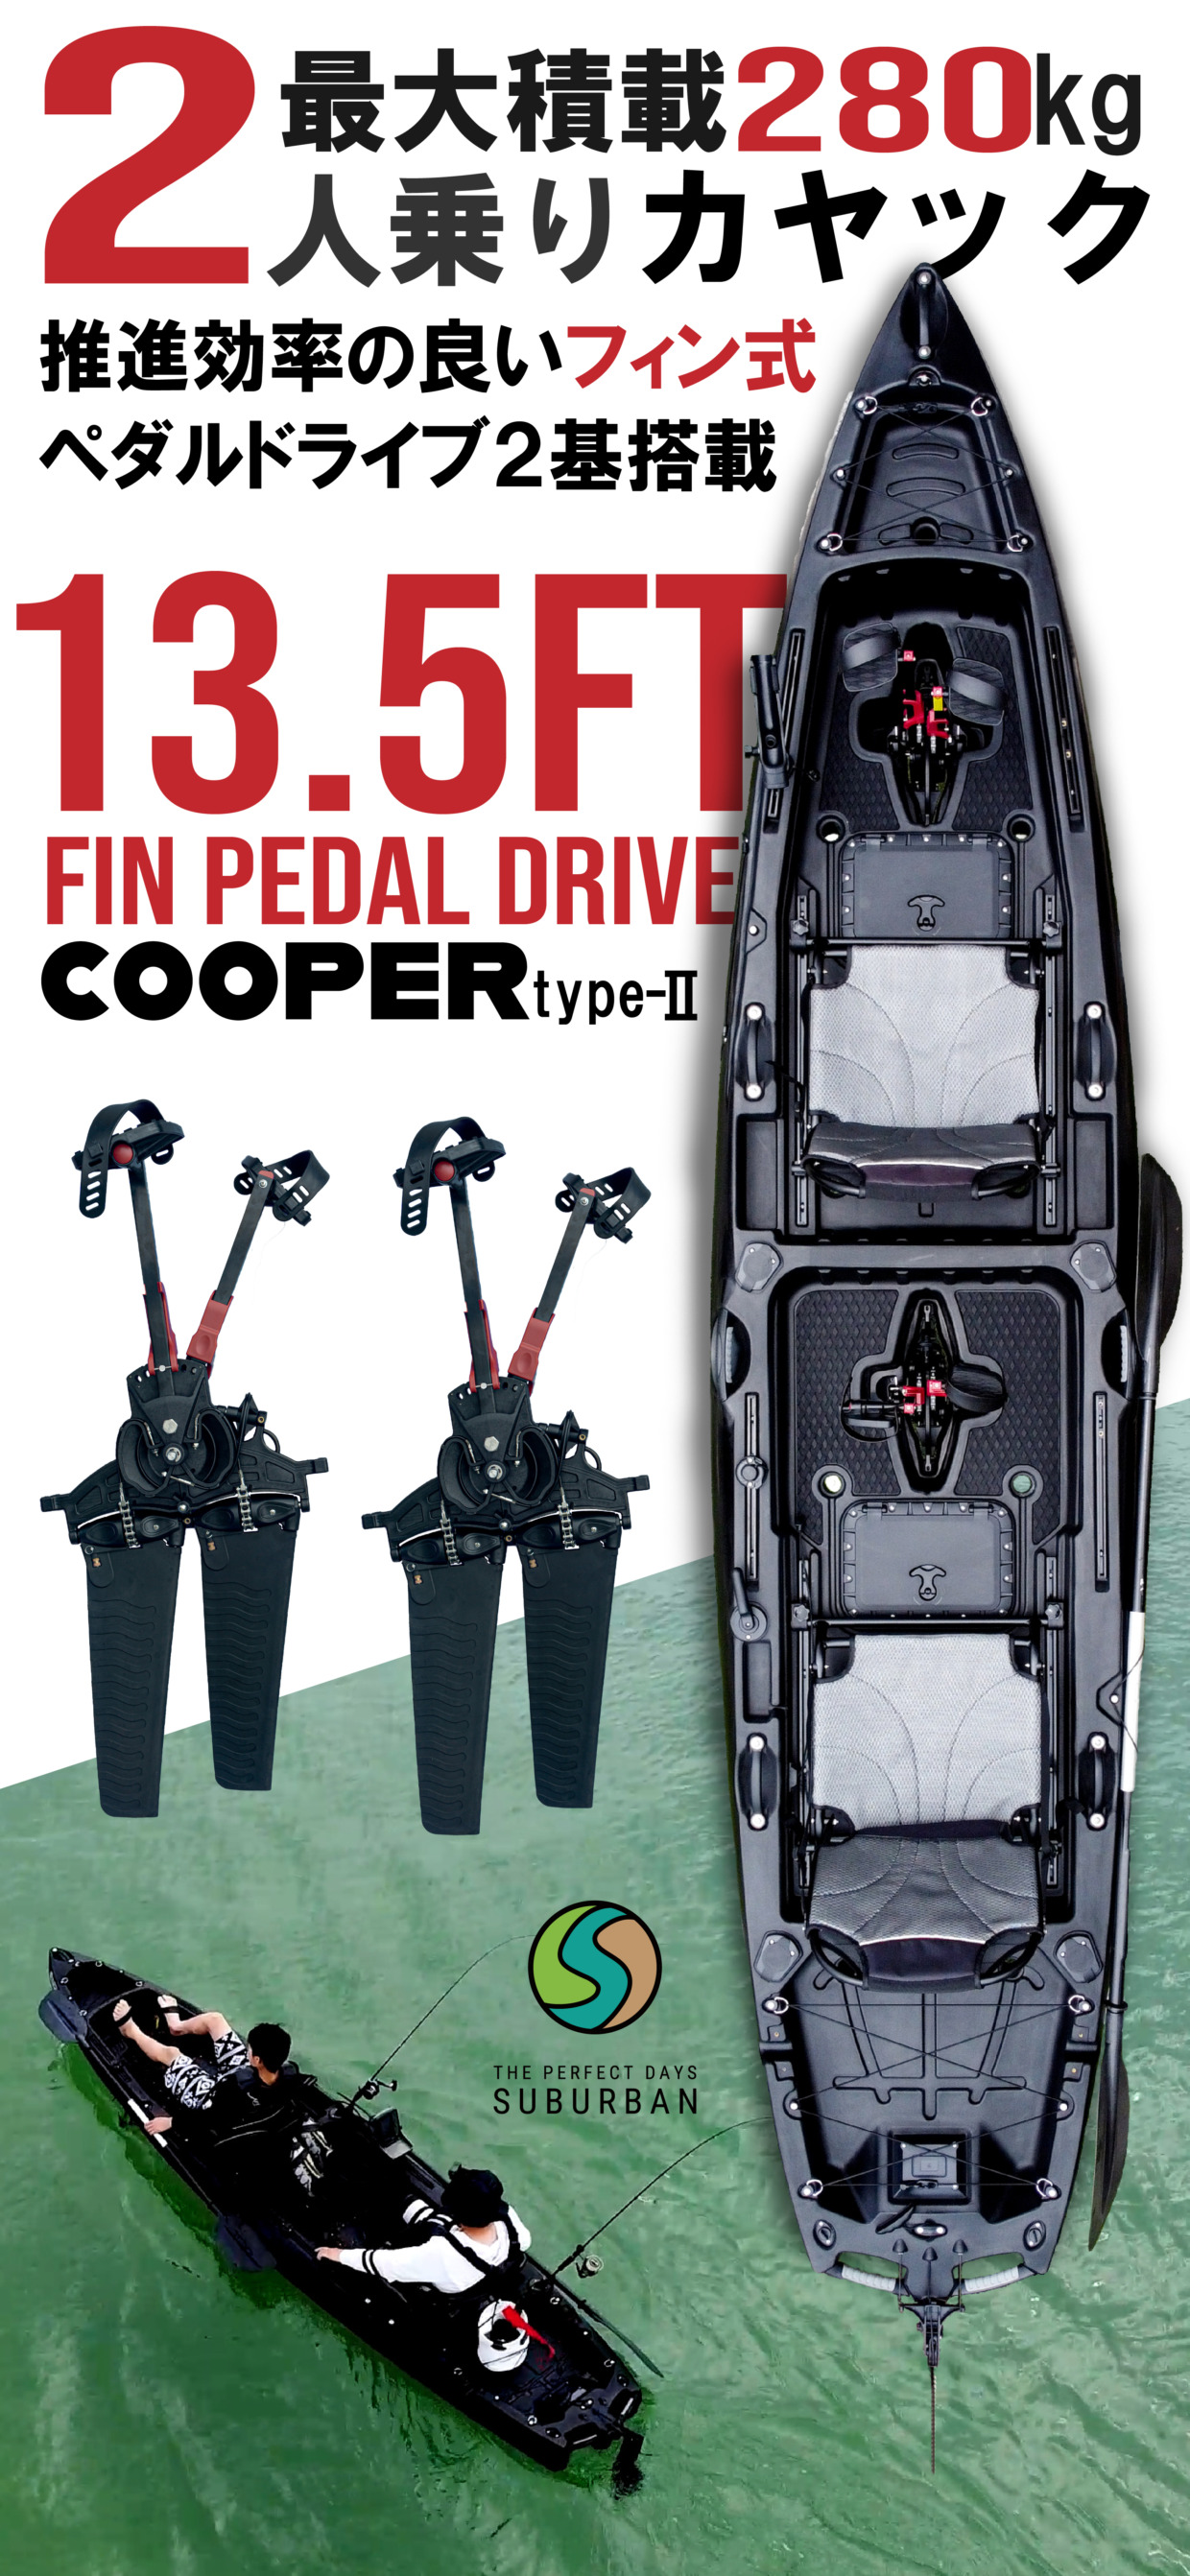 Cooper Type Ii グランジブラック Riderzcafe